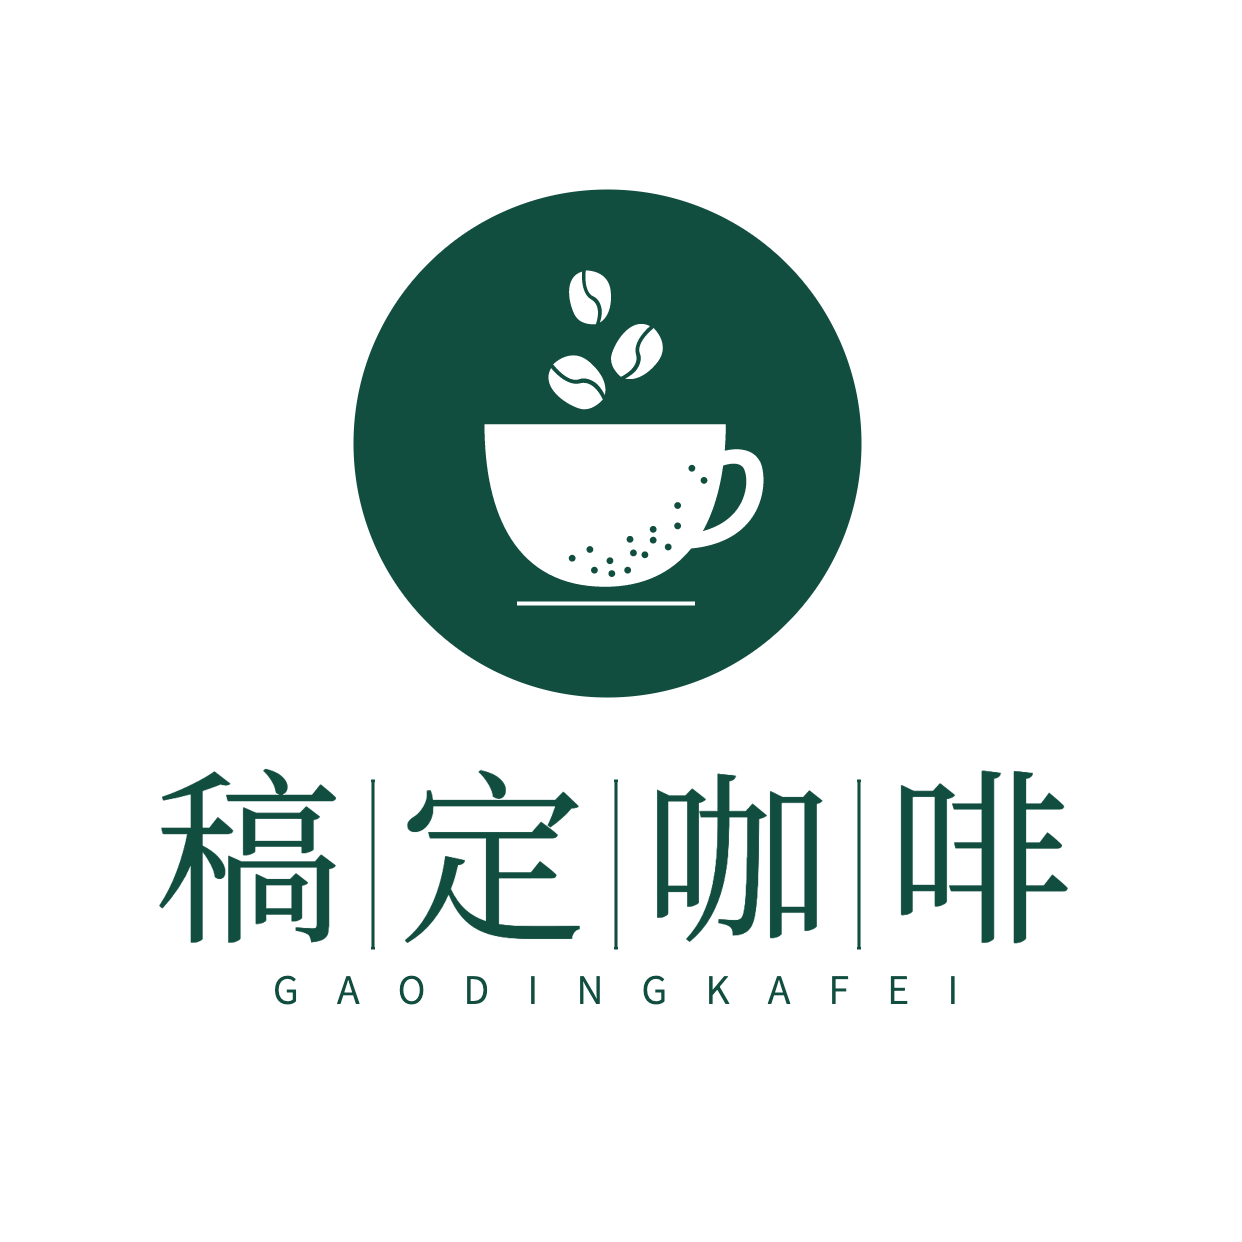 咖啡奶茶品牌宣传LOGO简约微信头像